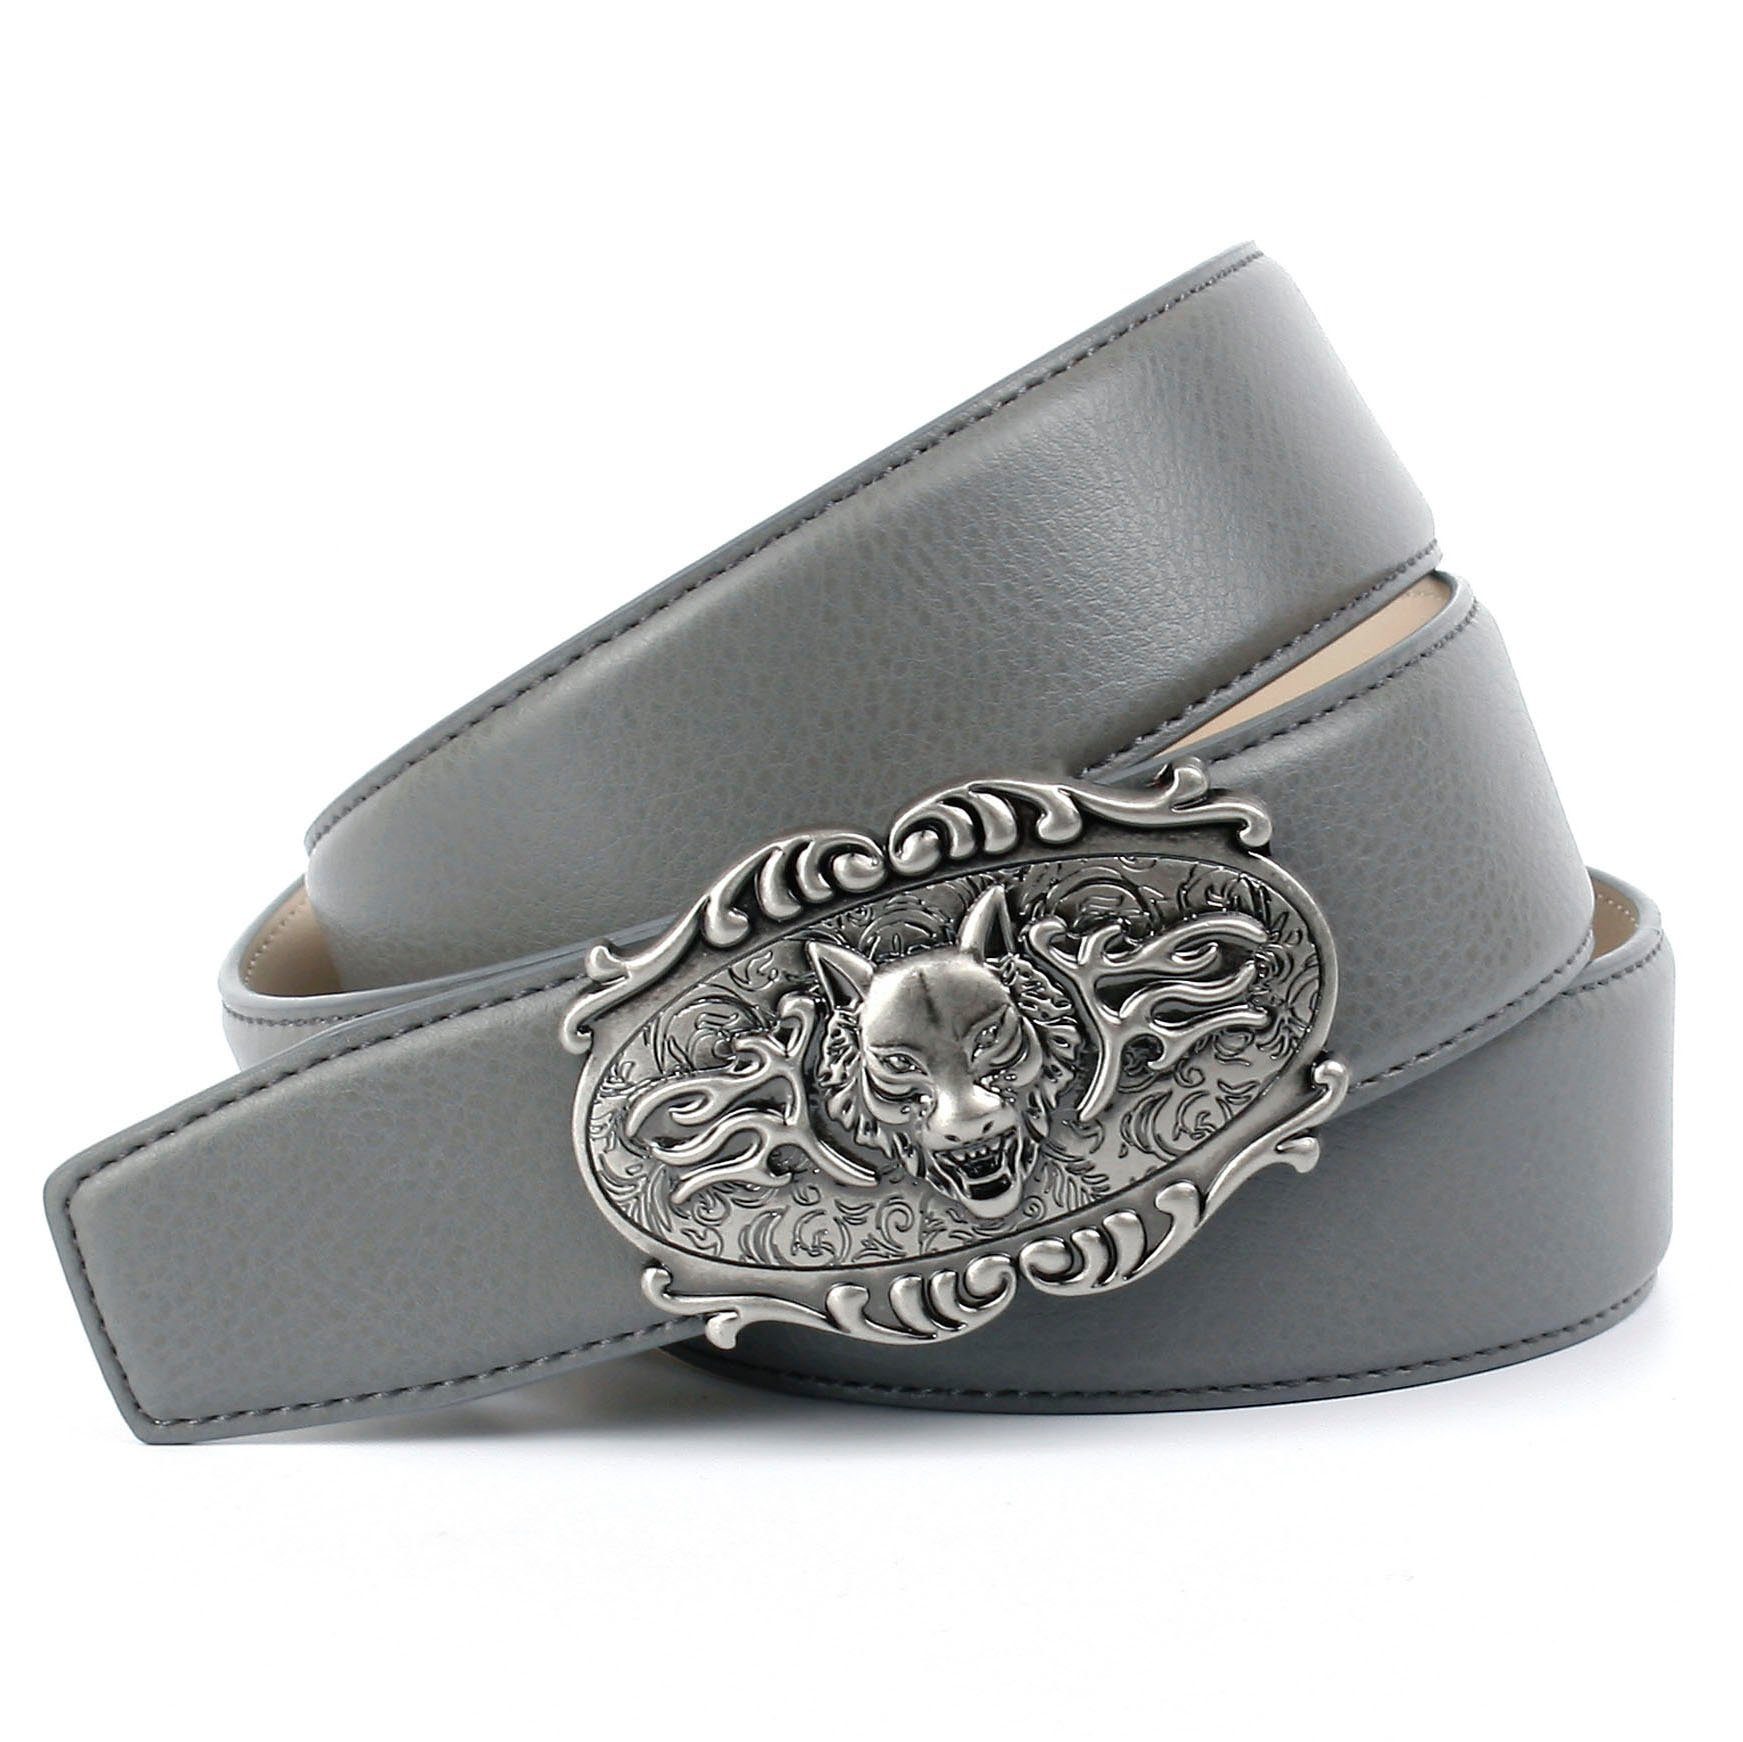 Anthoni Crown altsilberfarbener Ledergürtel mit Wolfkopf-Schließe